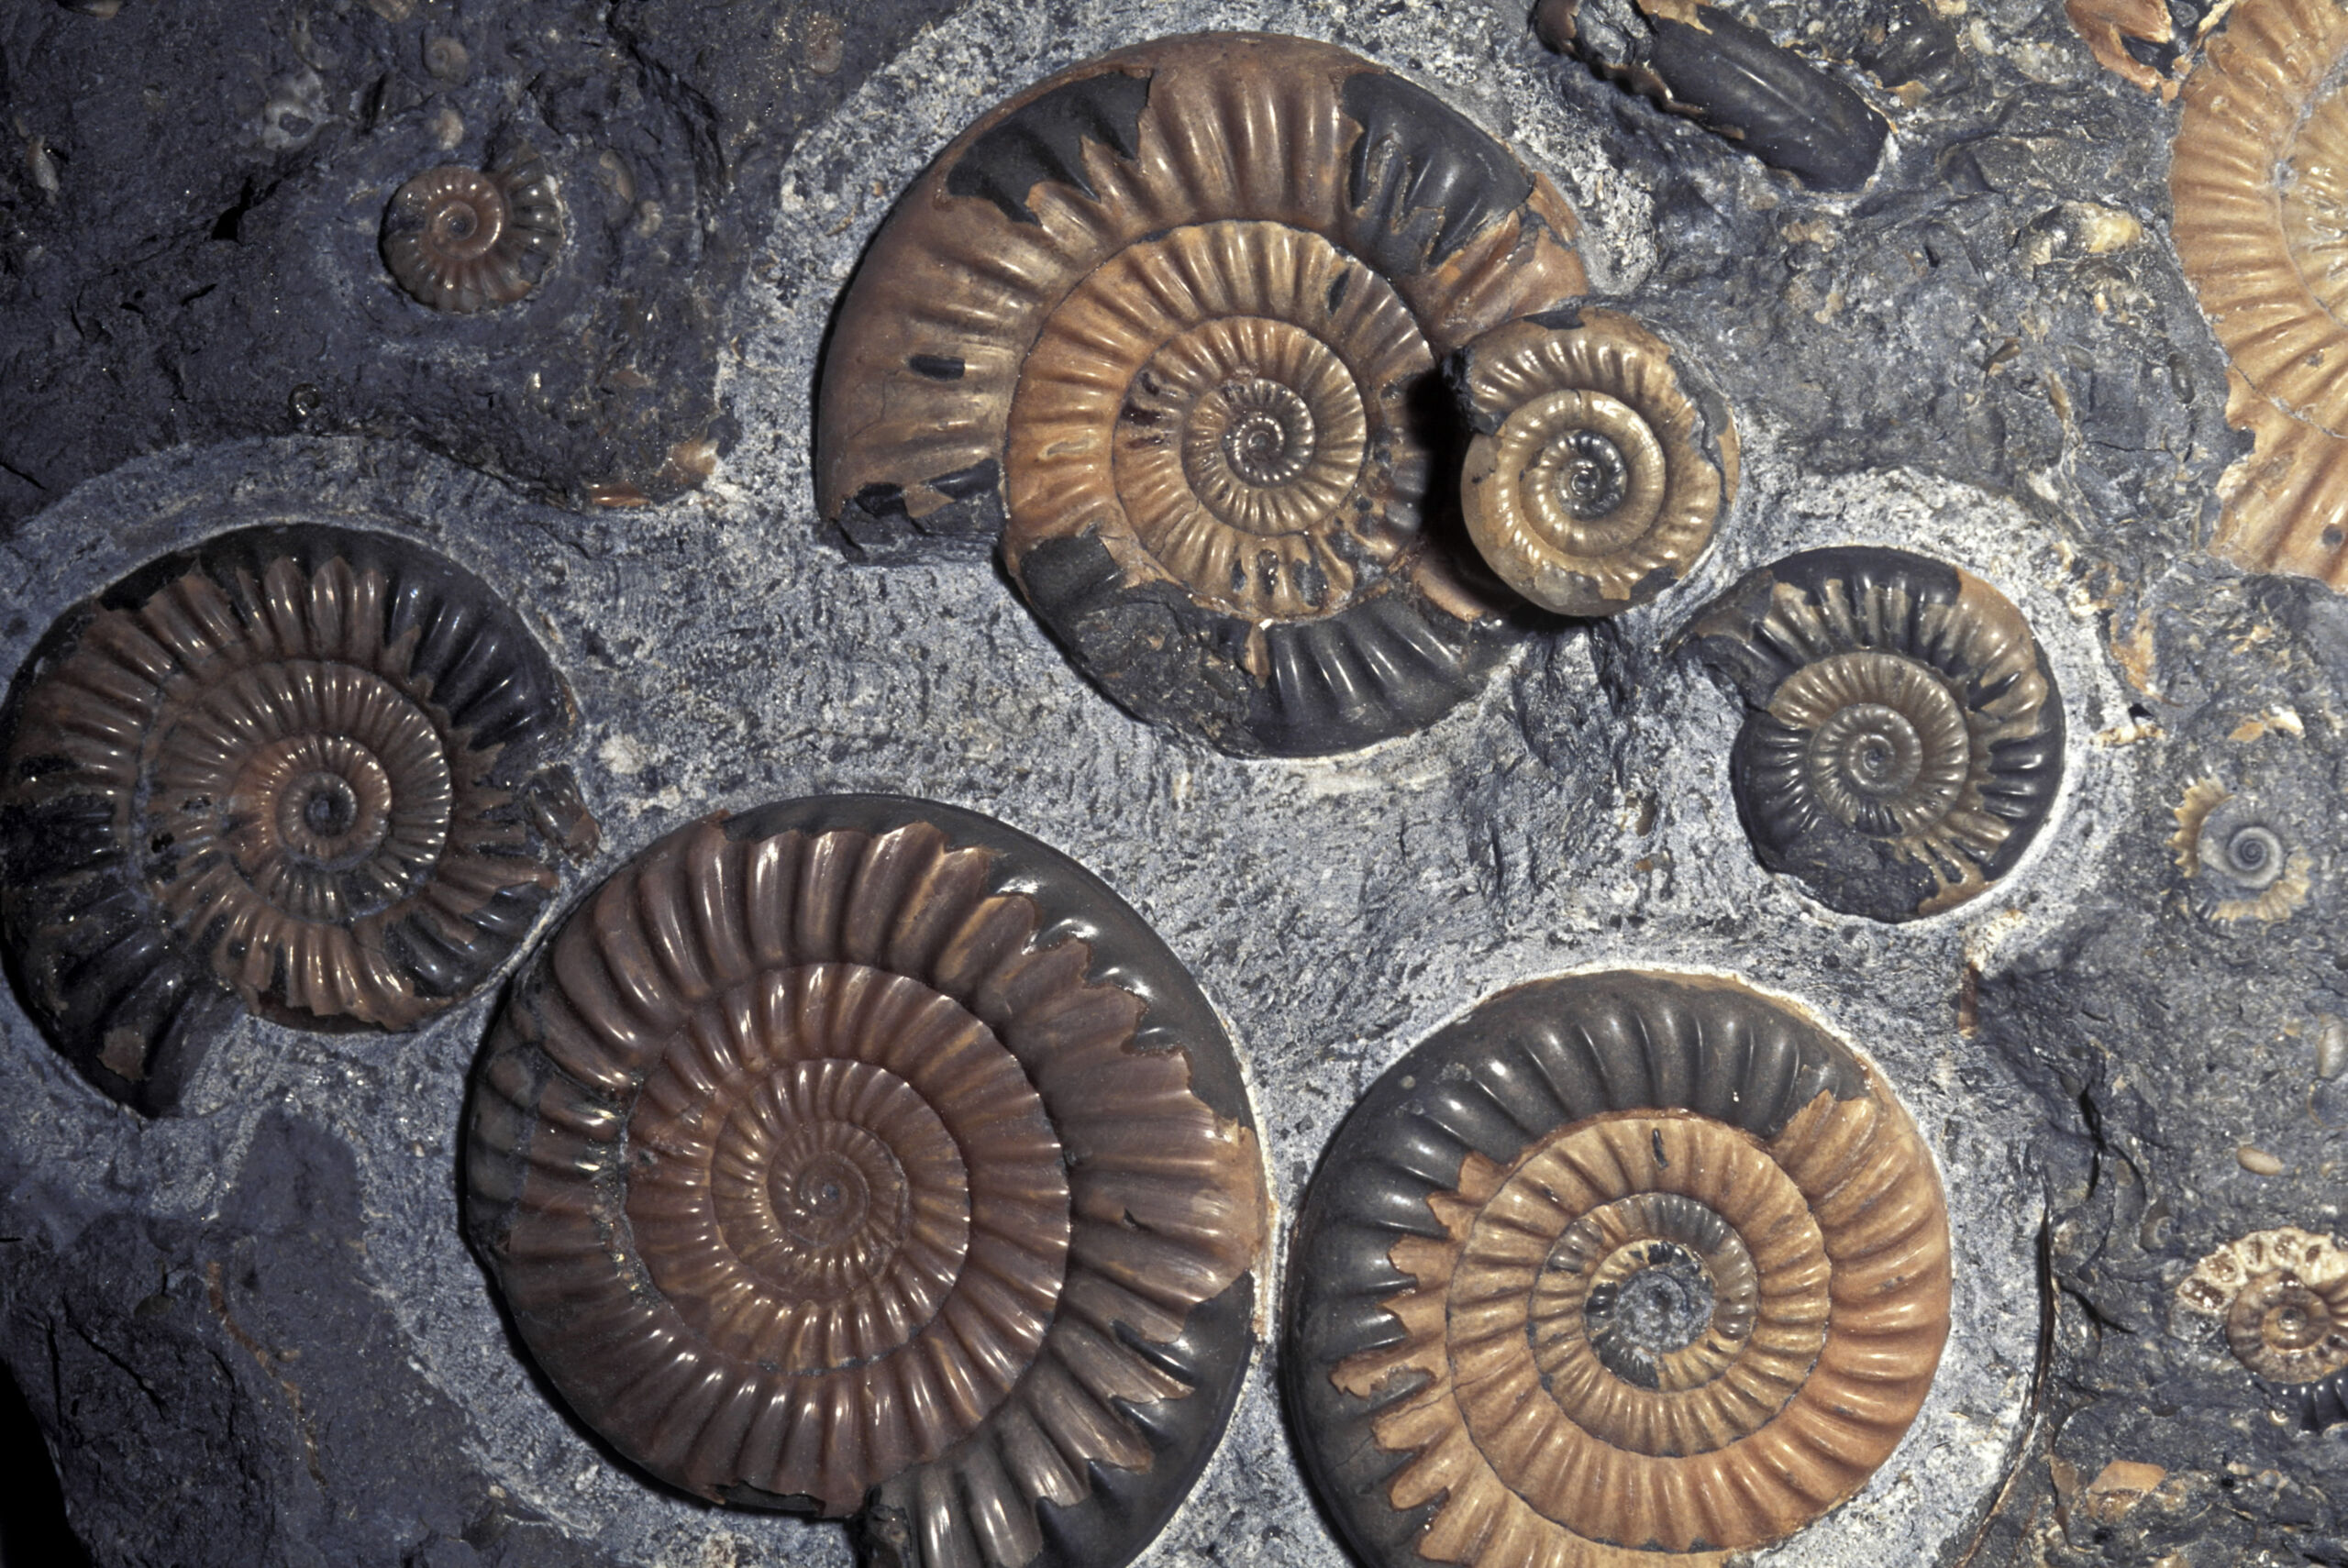 Les ammonites fossiles sont souvent trouvées intactes et non broyées en petits morceaux, comme elles l'étaient sur ce site.